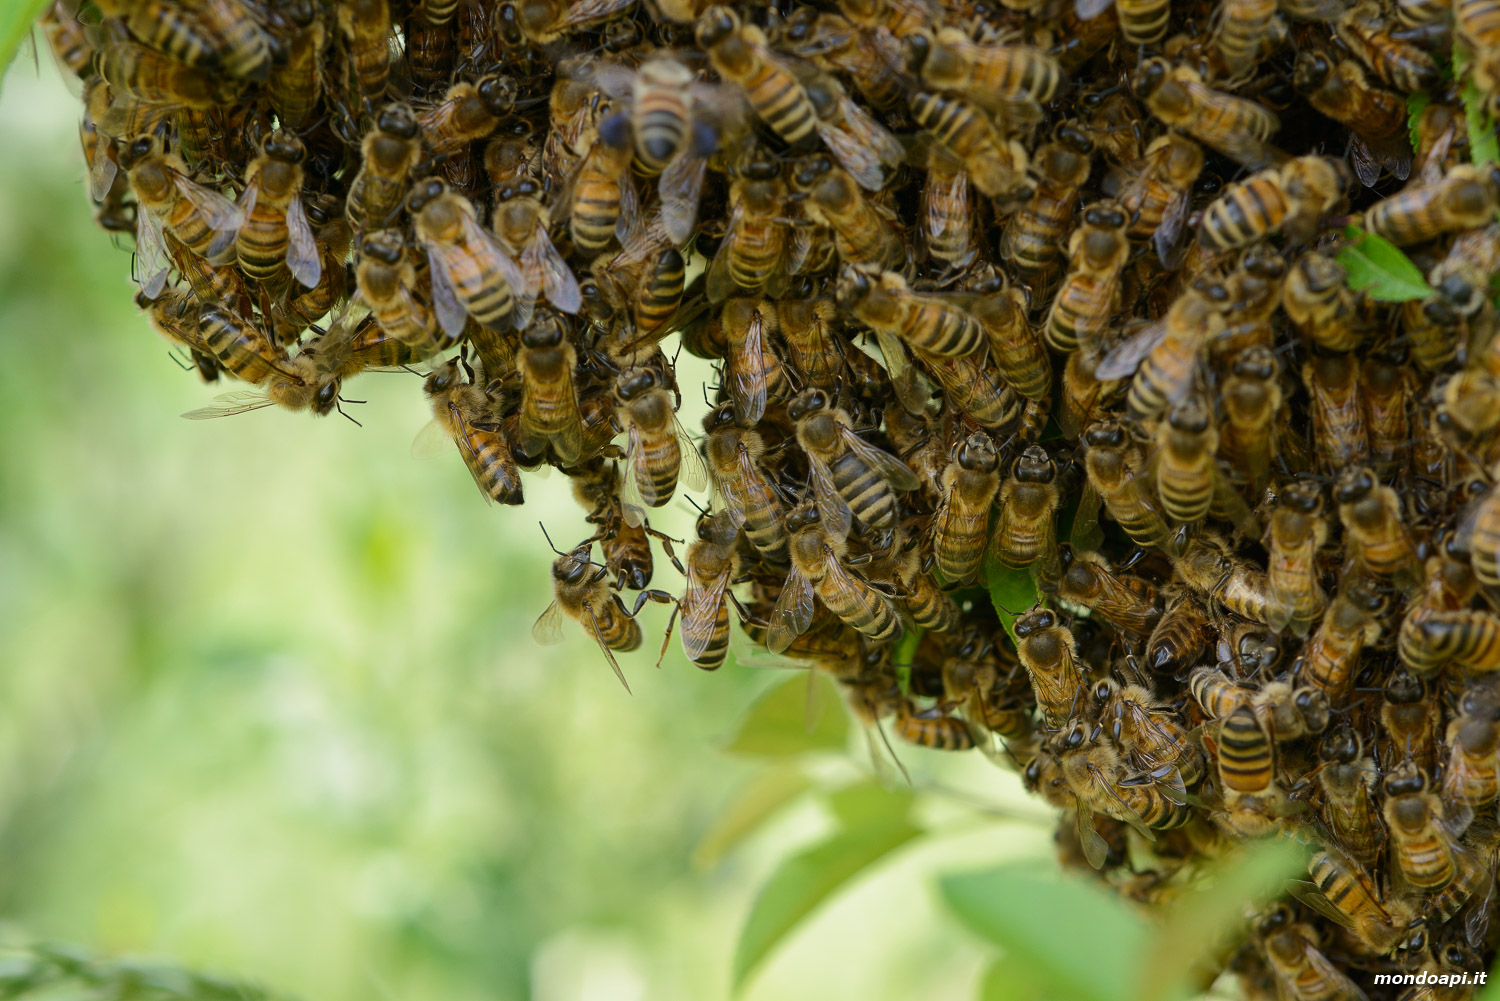 Le api dello sciame aggrappate l'una all'altra